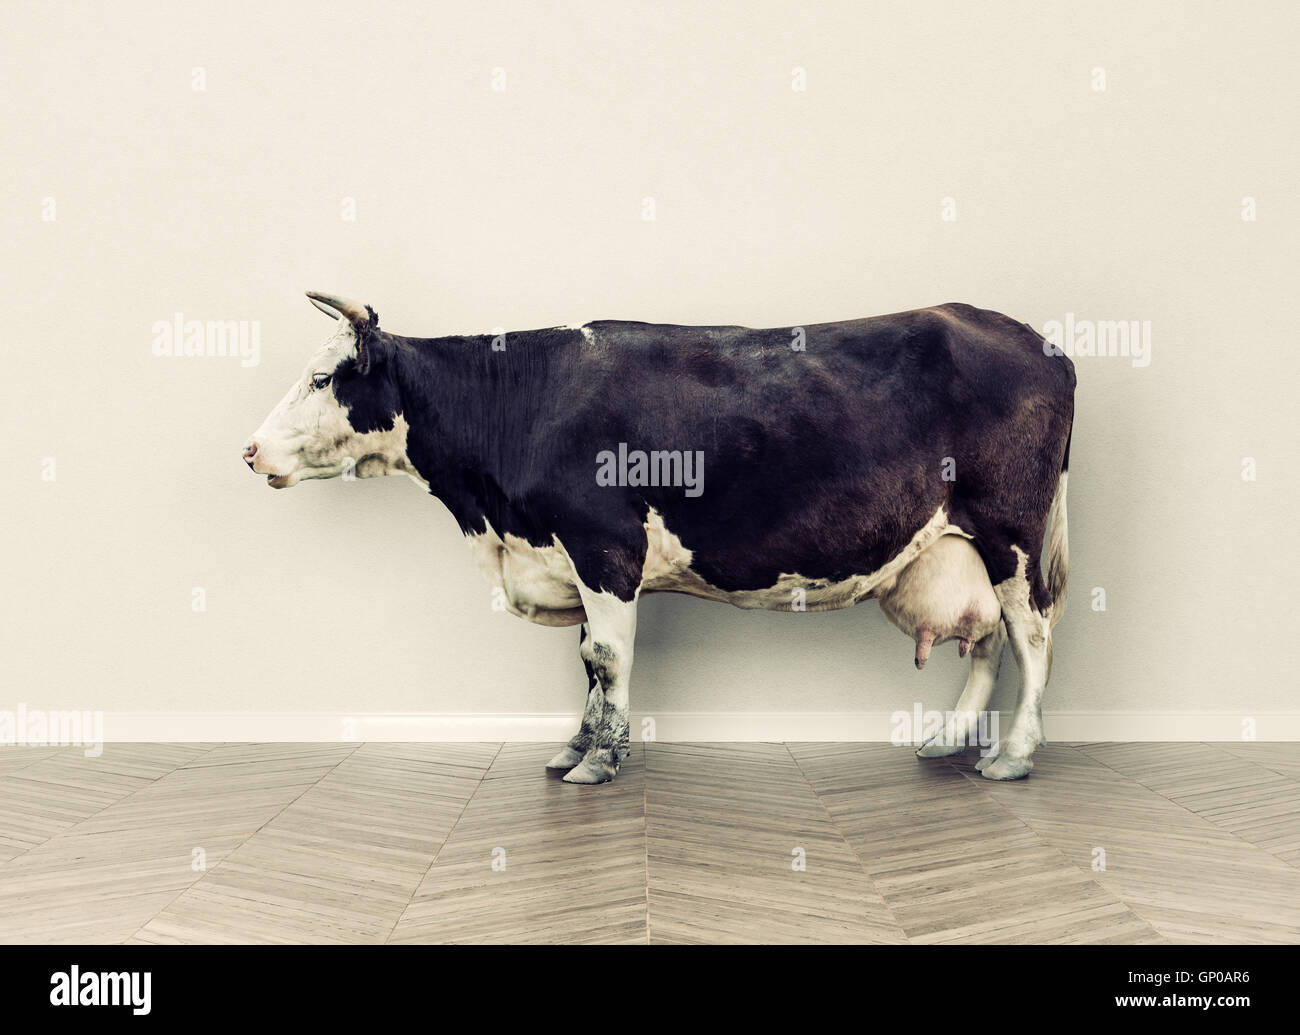 La mucca in una stanza vicino a muro bianco. Fotografia creativa combinazione di concetto Foto Stock